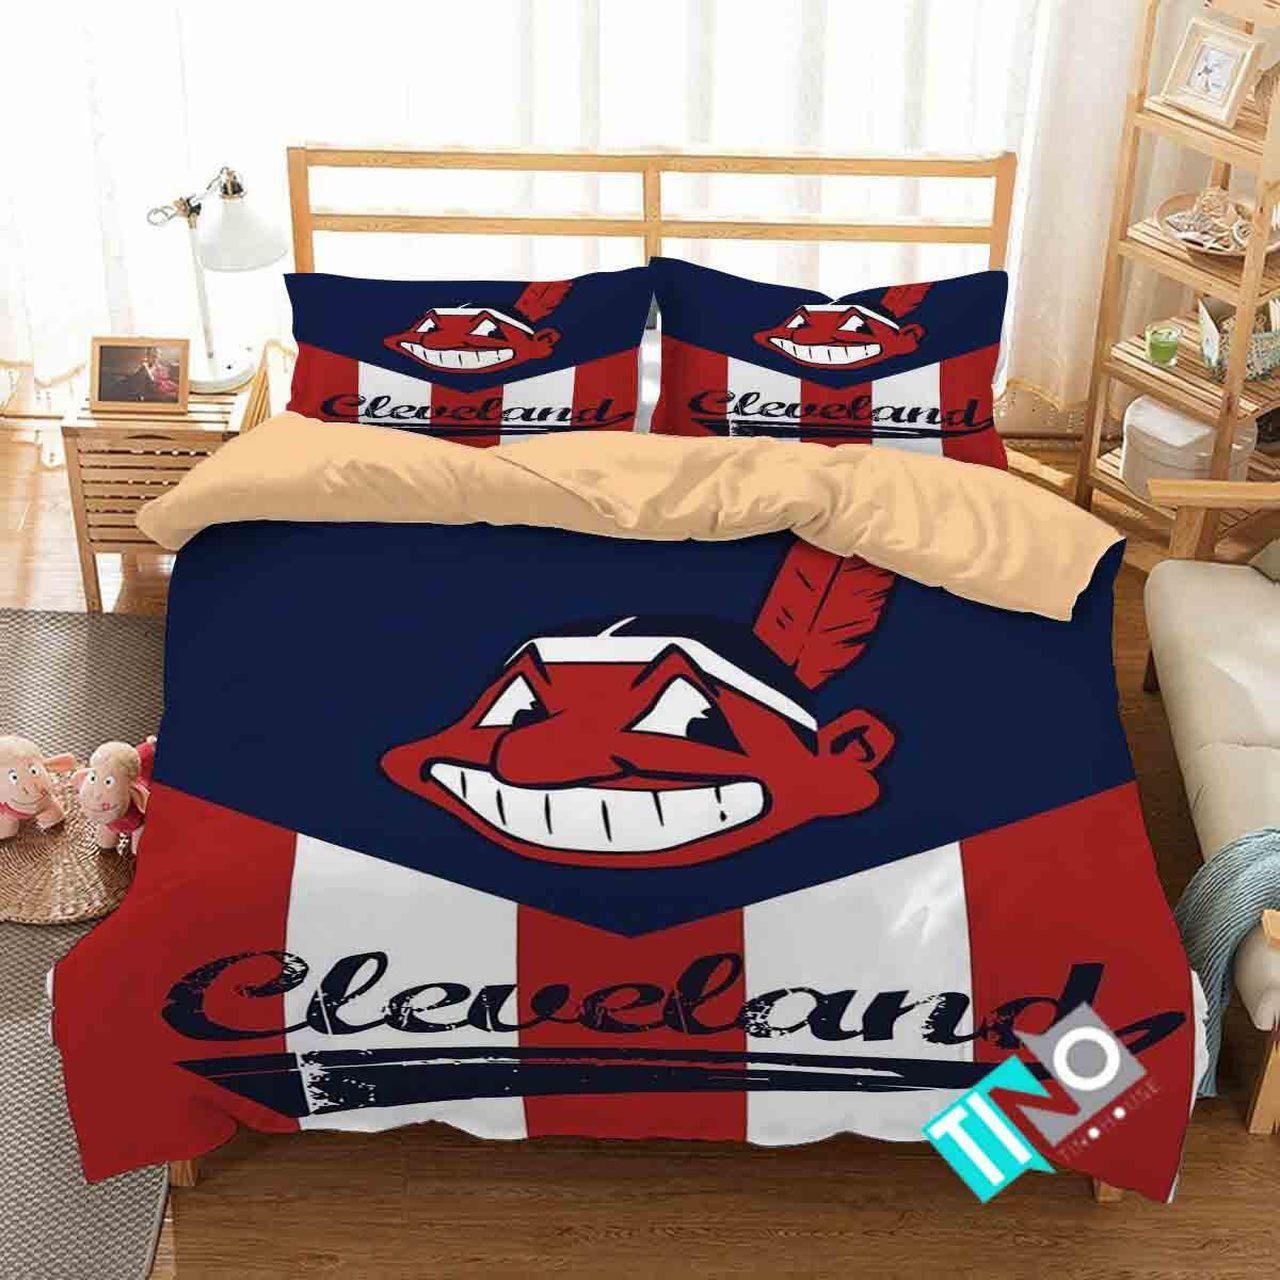 BEST Cleveland Indians MLB logo Duvet Cover Bedding Set